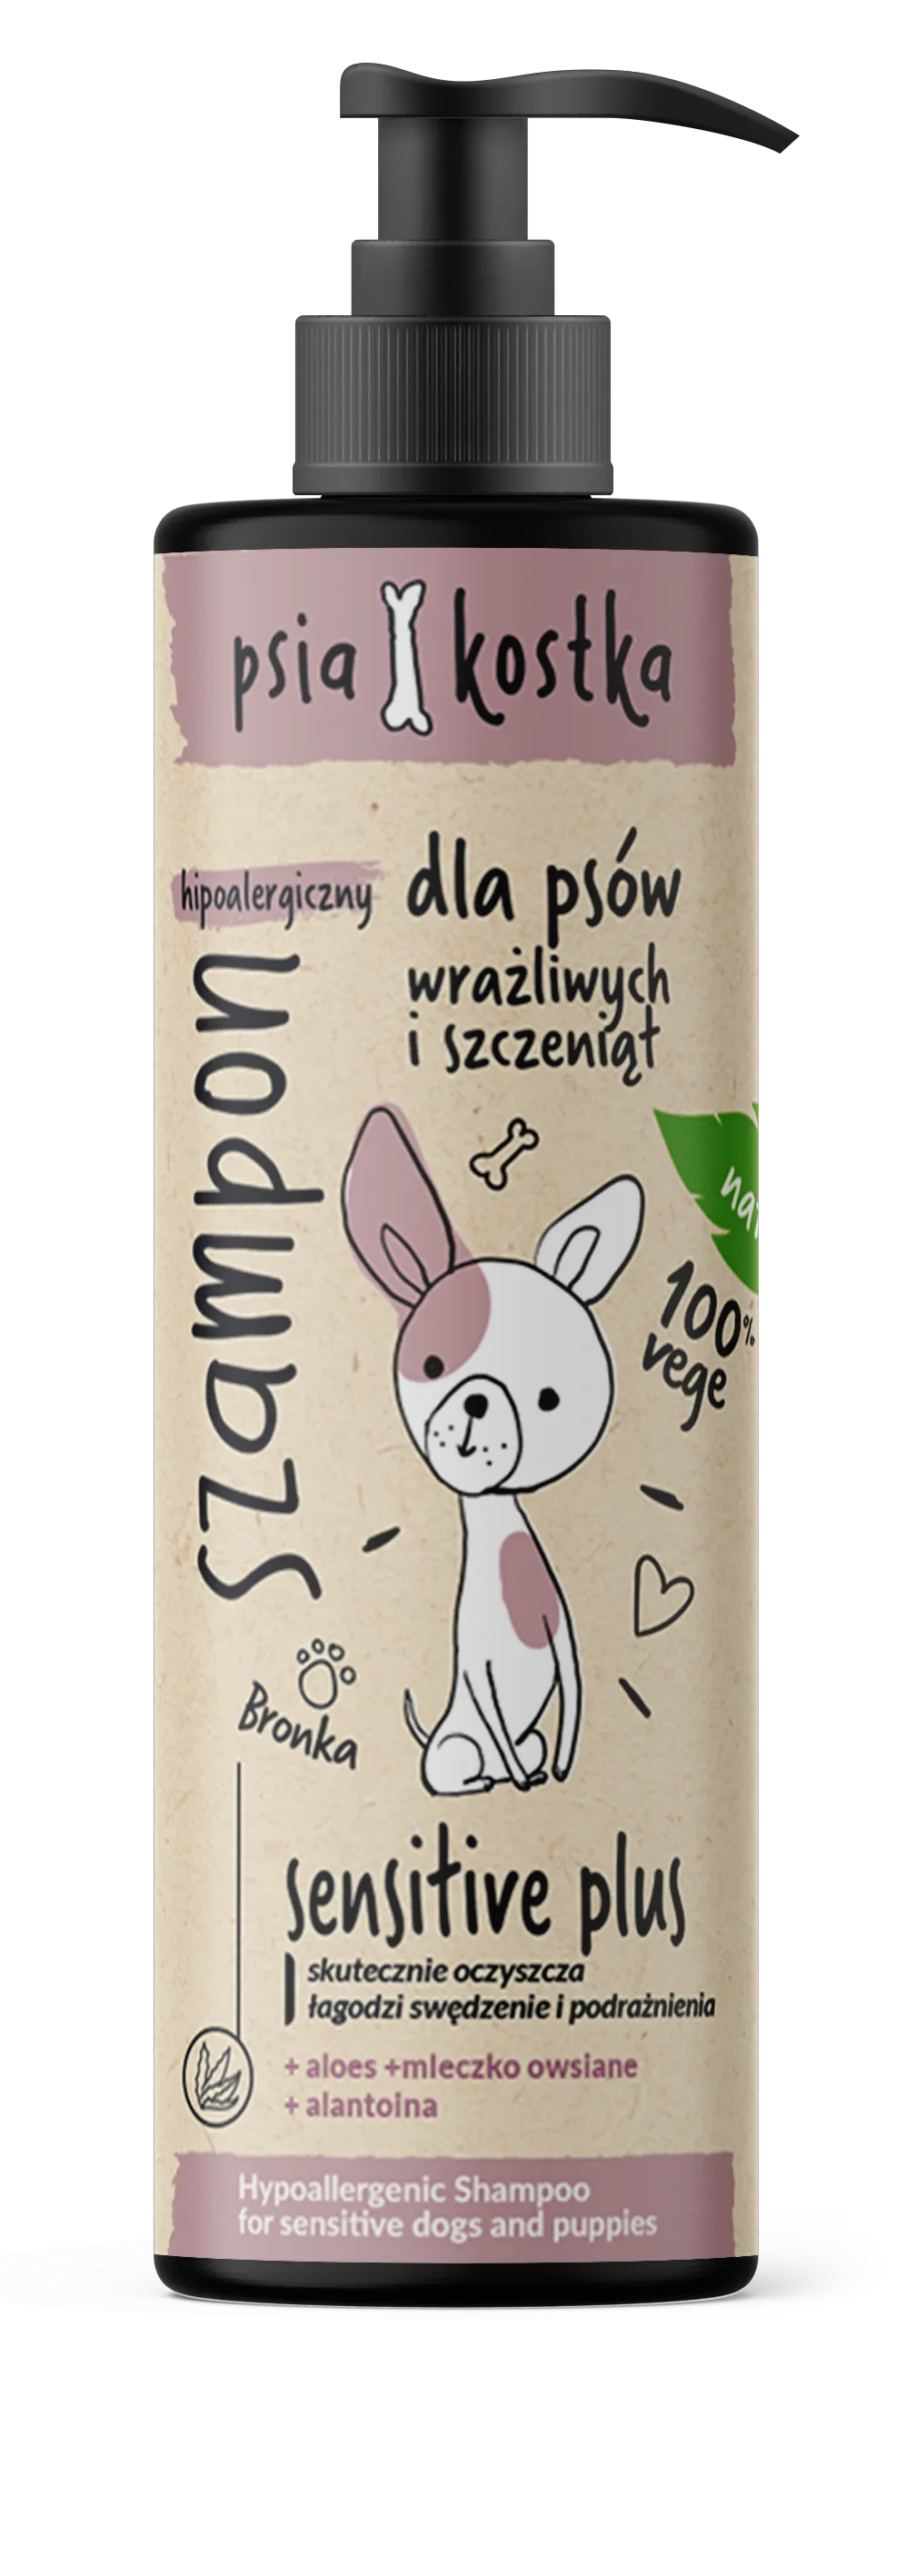 Psia Kostka hipoalergiczny szampon dla psów wrażliwych i szczeniąt, 400 ml